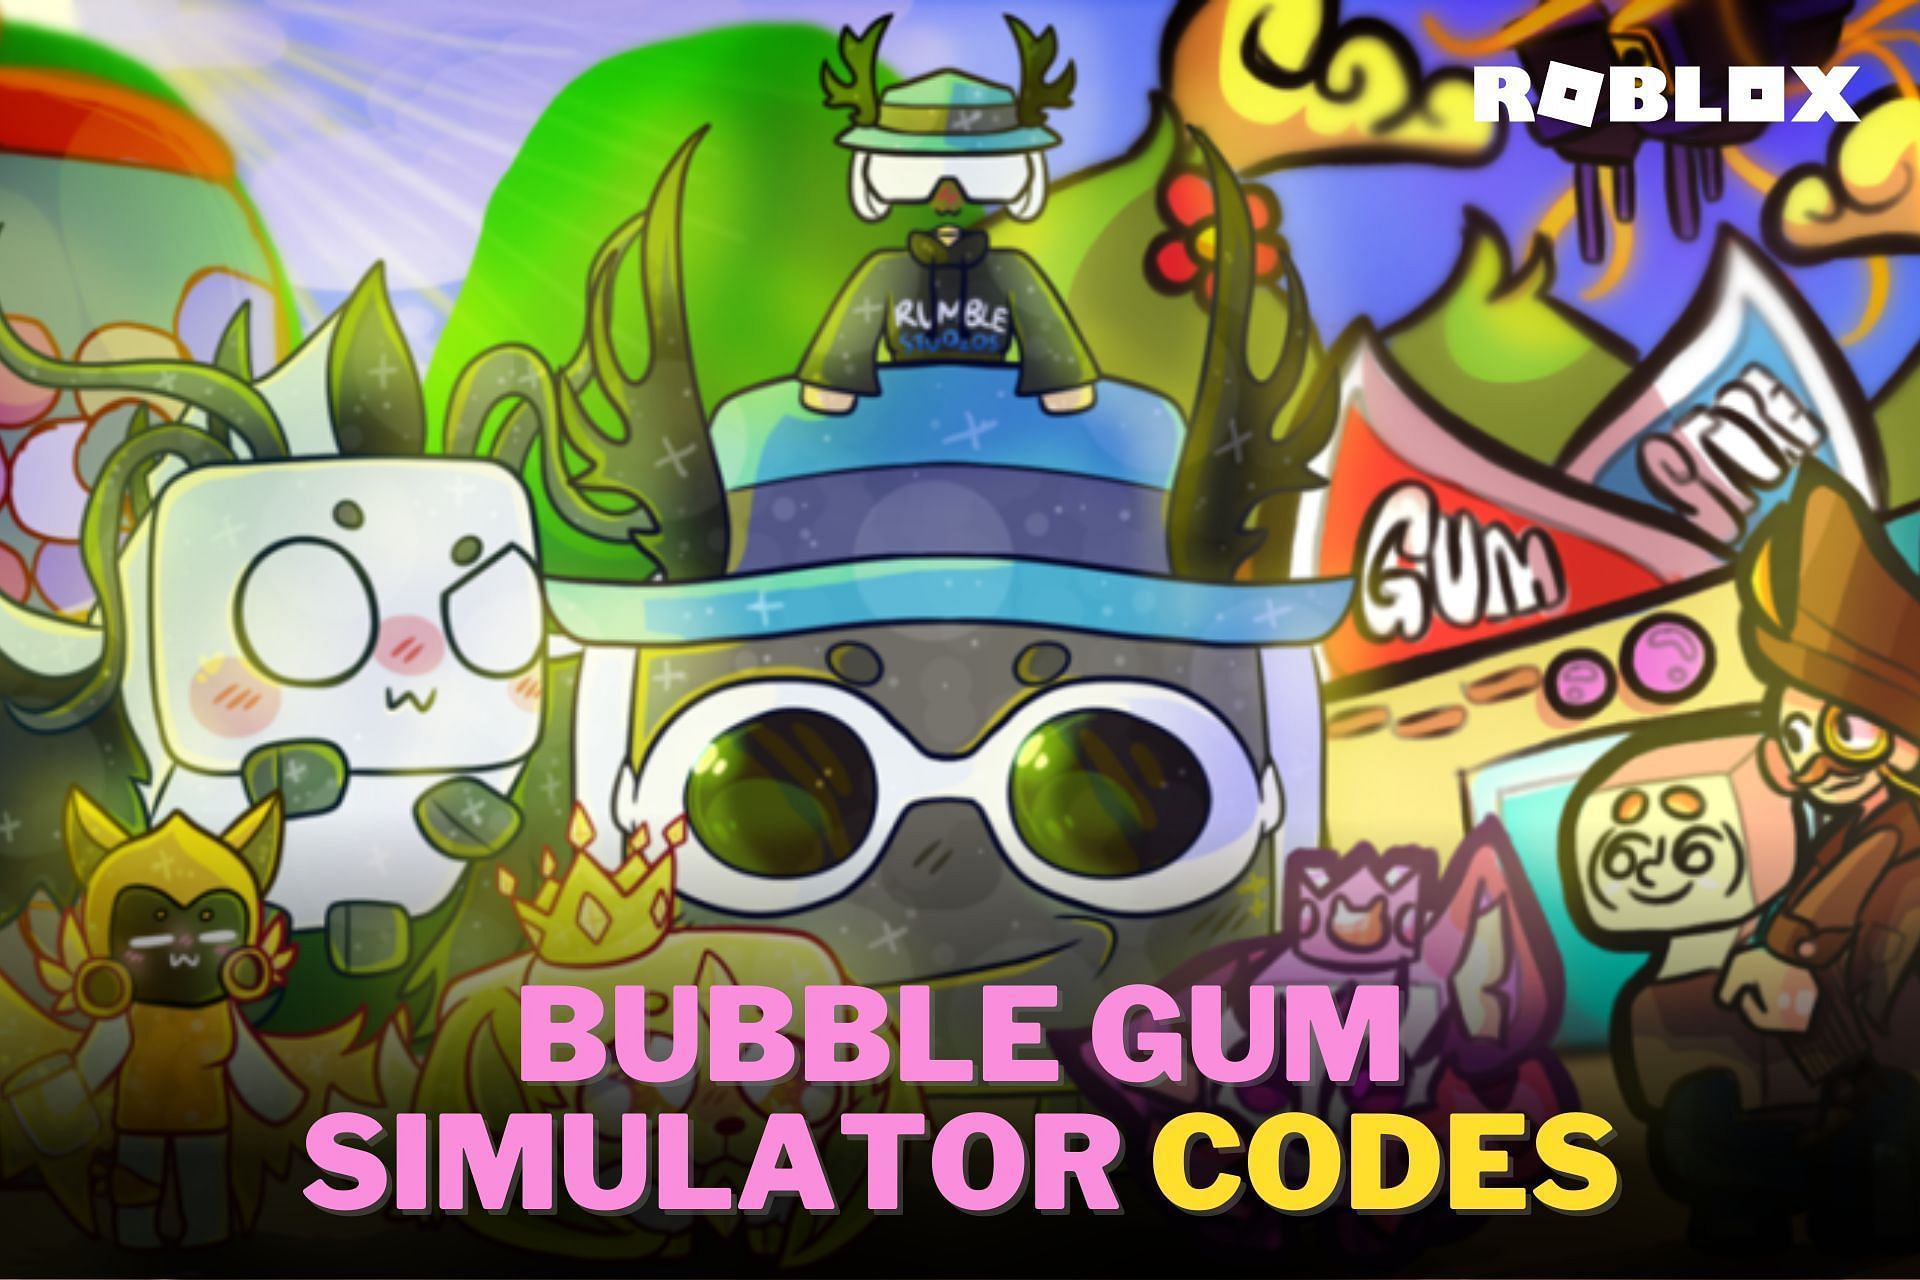 Bubble Legends Codes - Roblox December 2023 